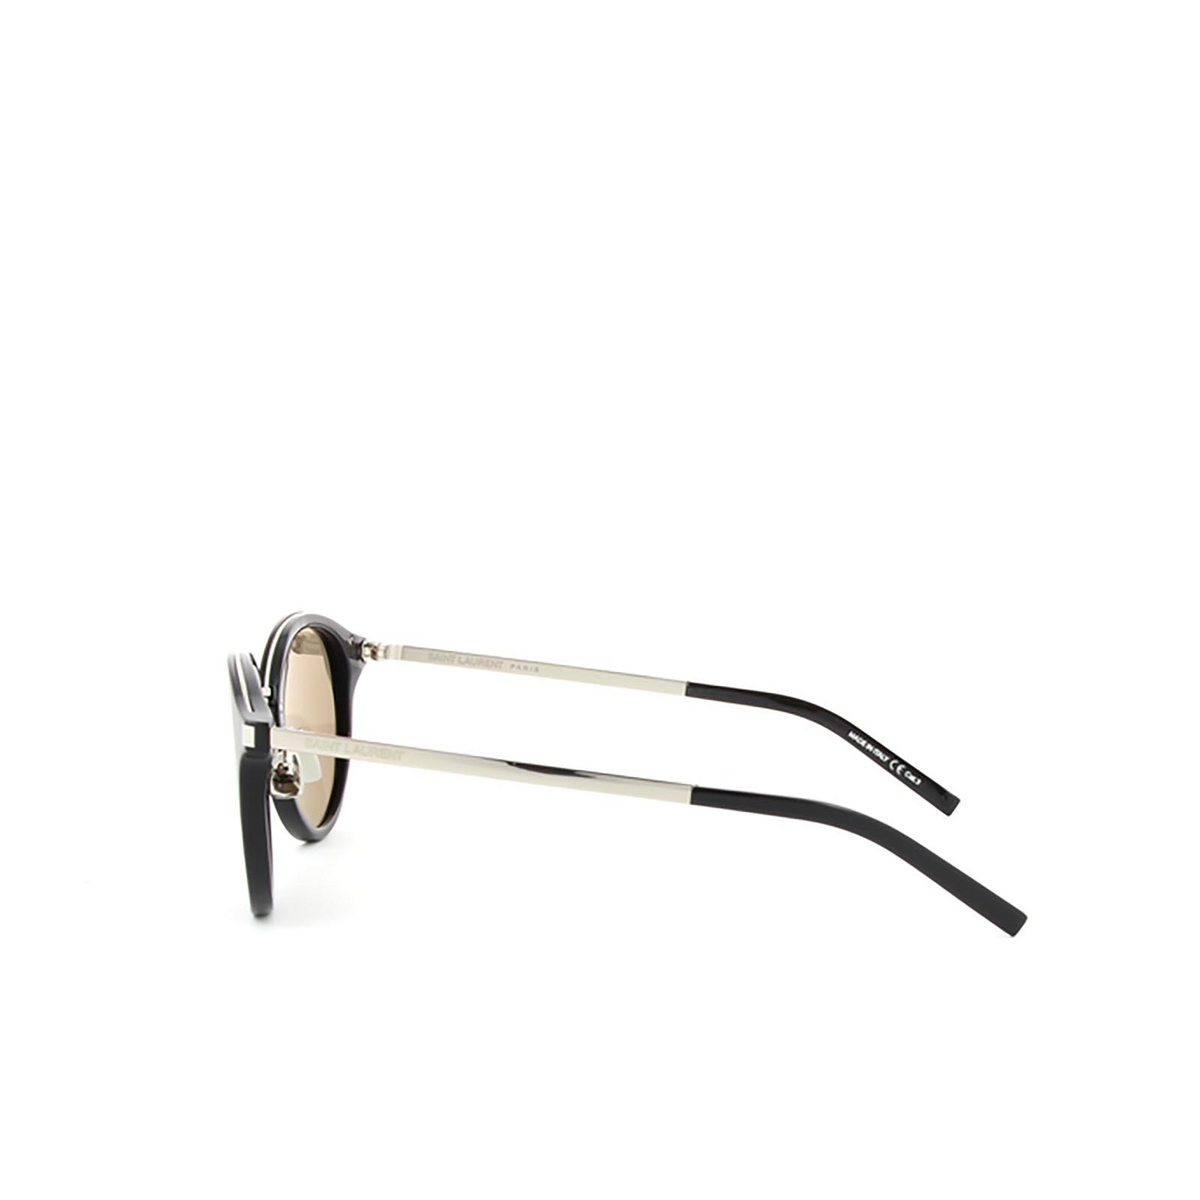 Saint Laurent® Round Sunglasses: SL 57 color 002 Black - 3/3